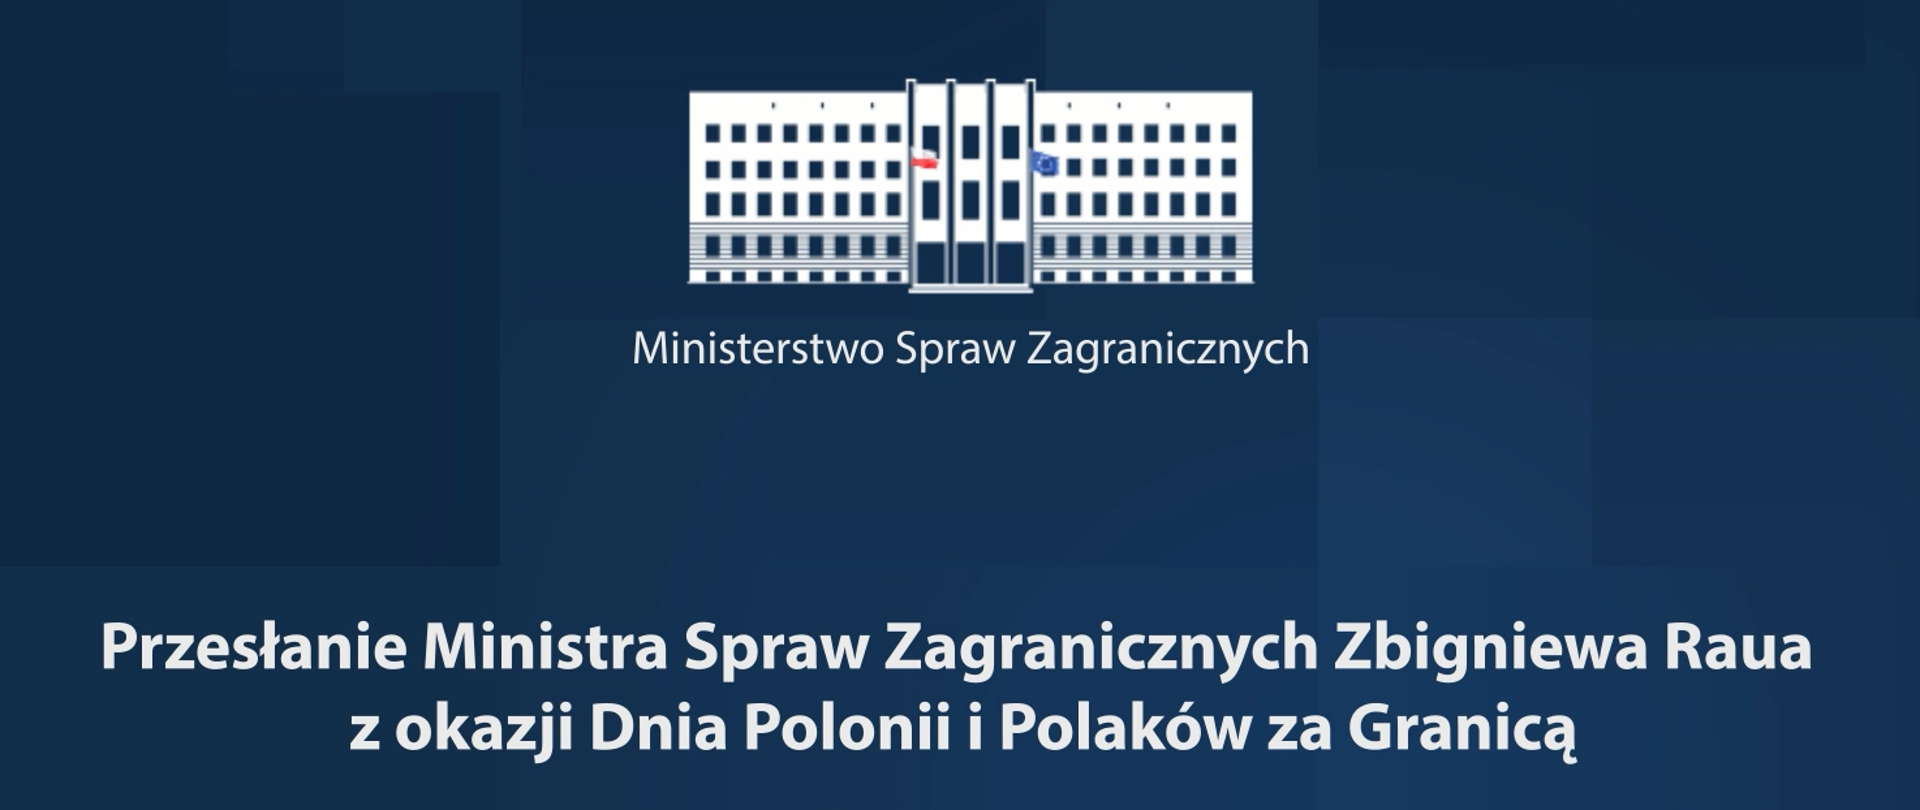 Przesłanie MSZ z okazji Dnia Polonii i Polaków za Granicą